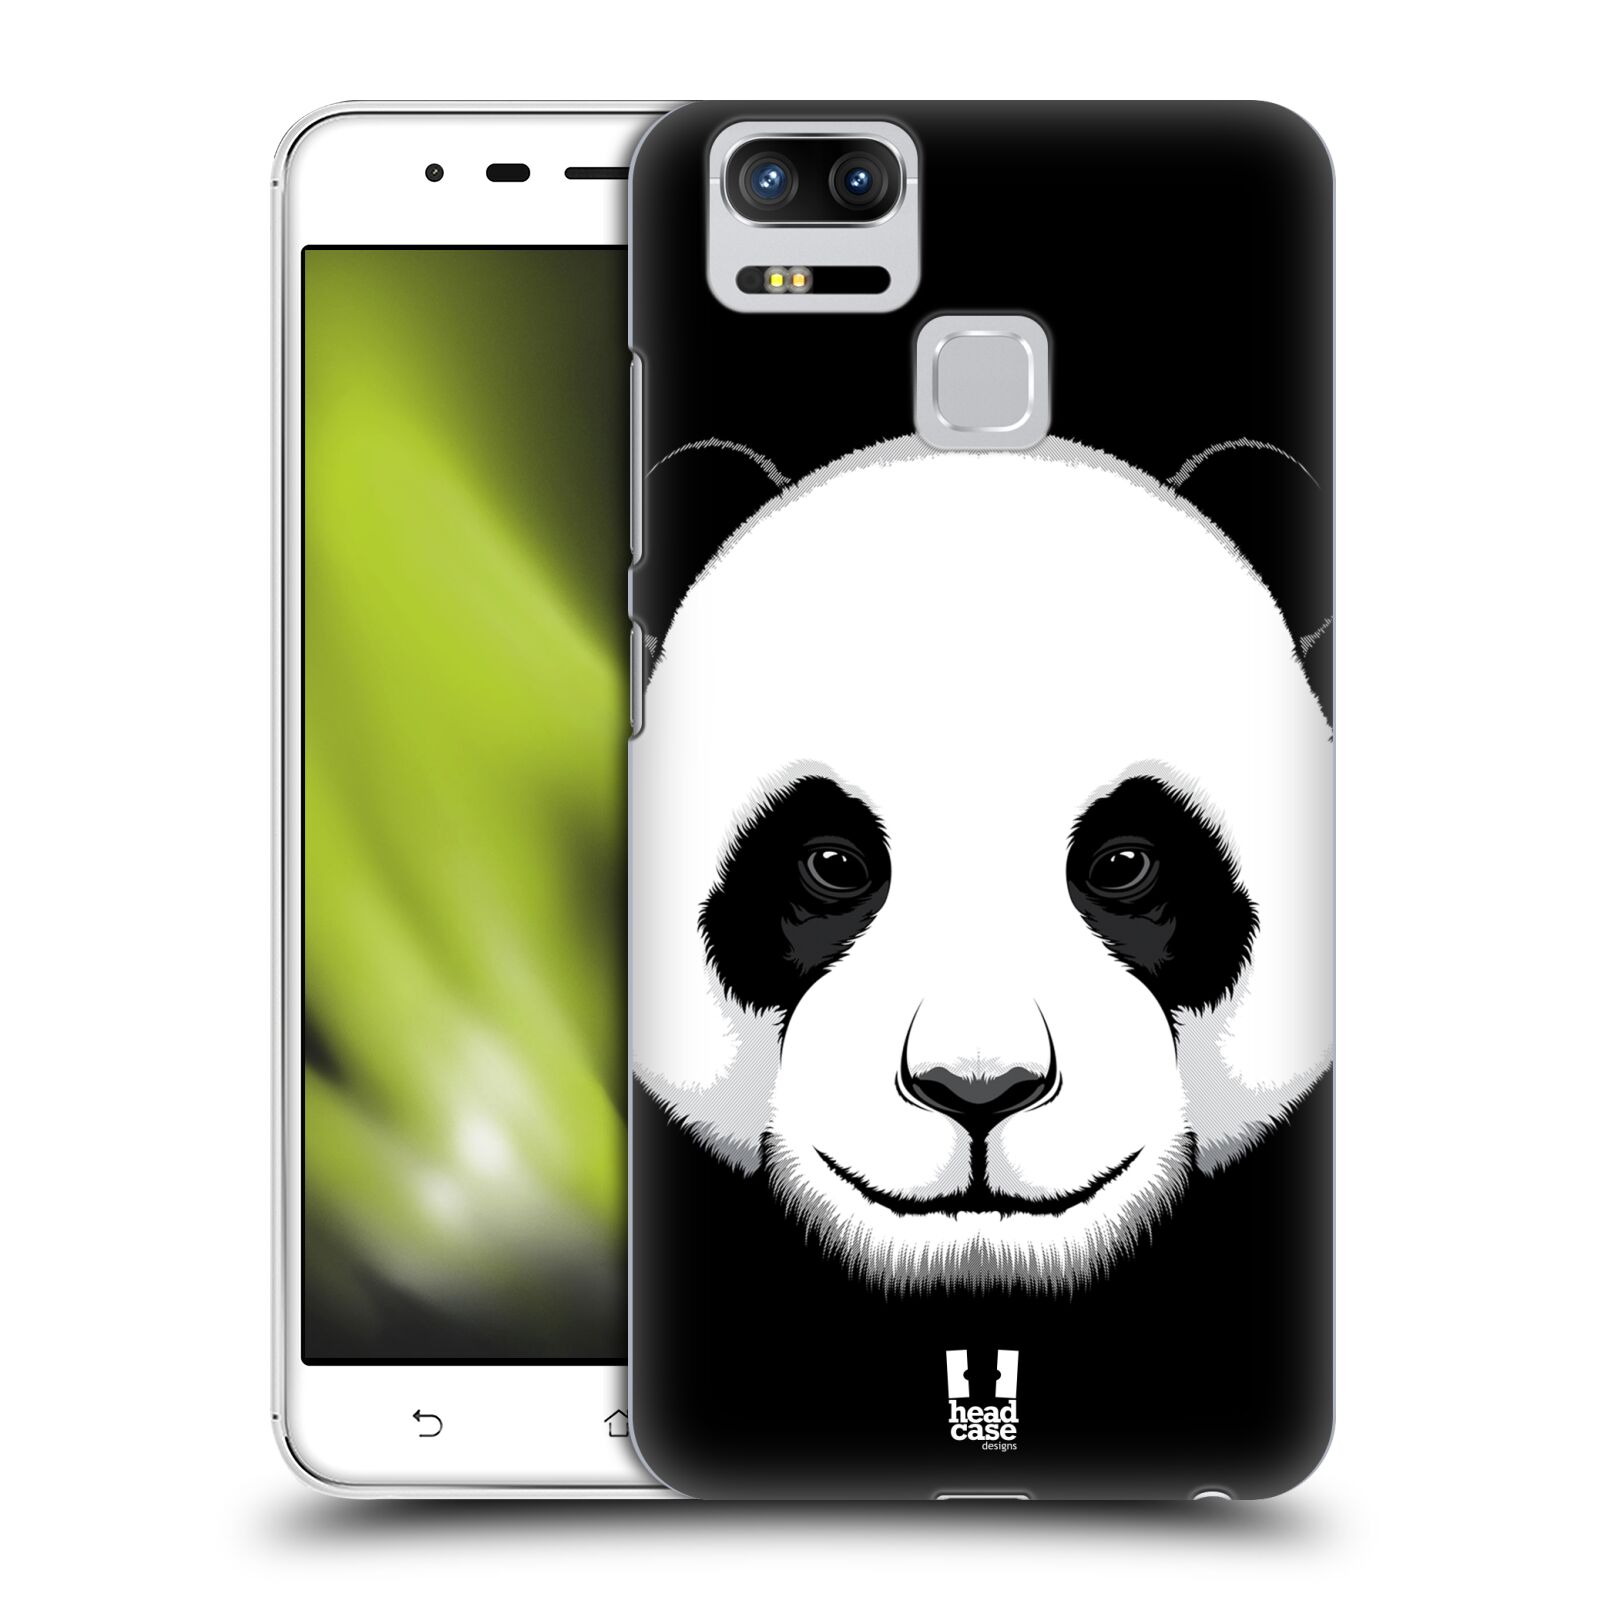 HEAD CASE plastový obal na mobil Asus Zenfone 3 Zoom ZE553KL vzor Zvíře kreslená tvář panda